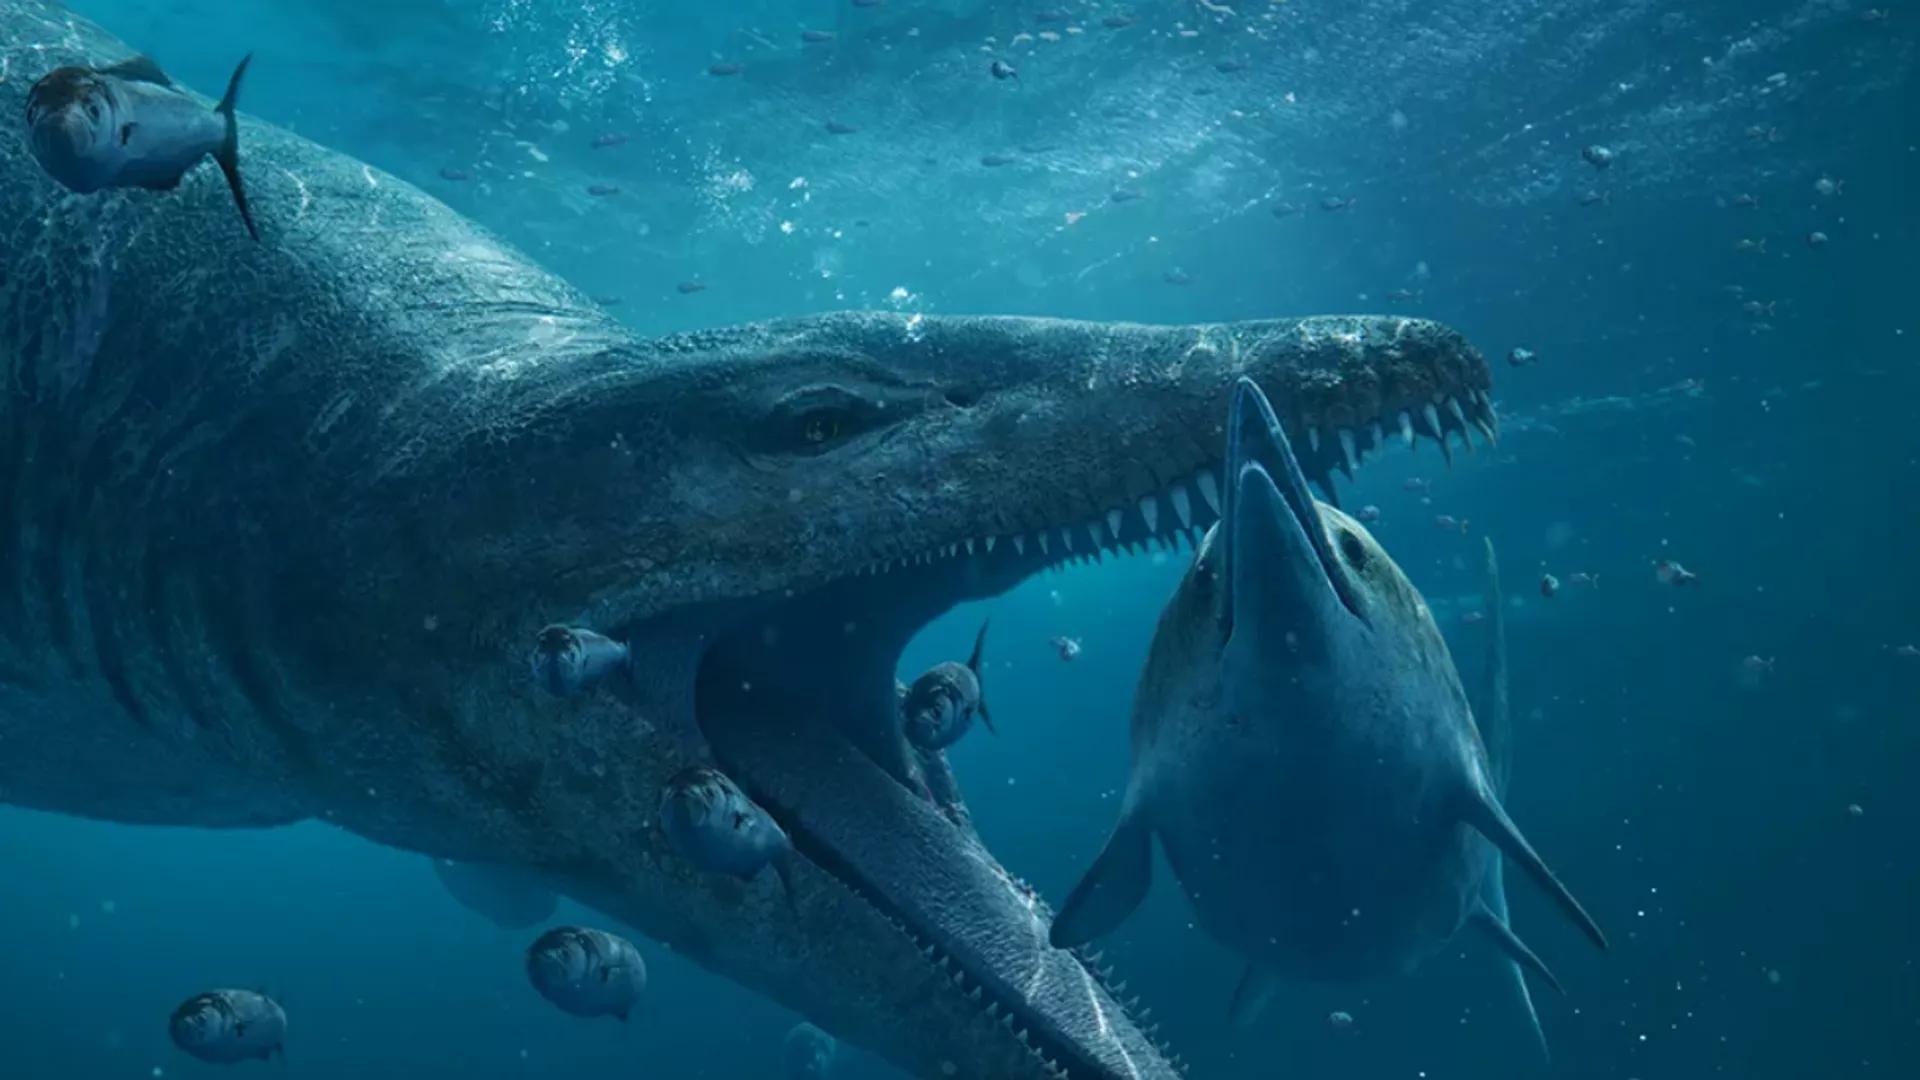 Oceanic T. Rex: Giant Pliosaur Skull Discovered off UK's Jurassic Coast